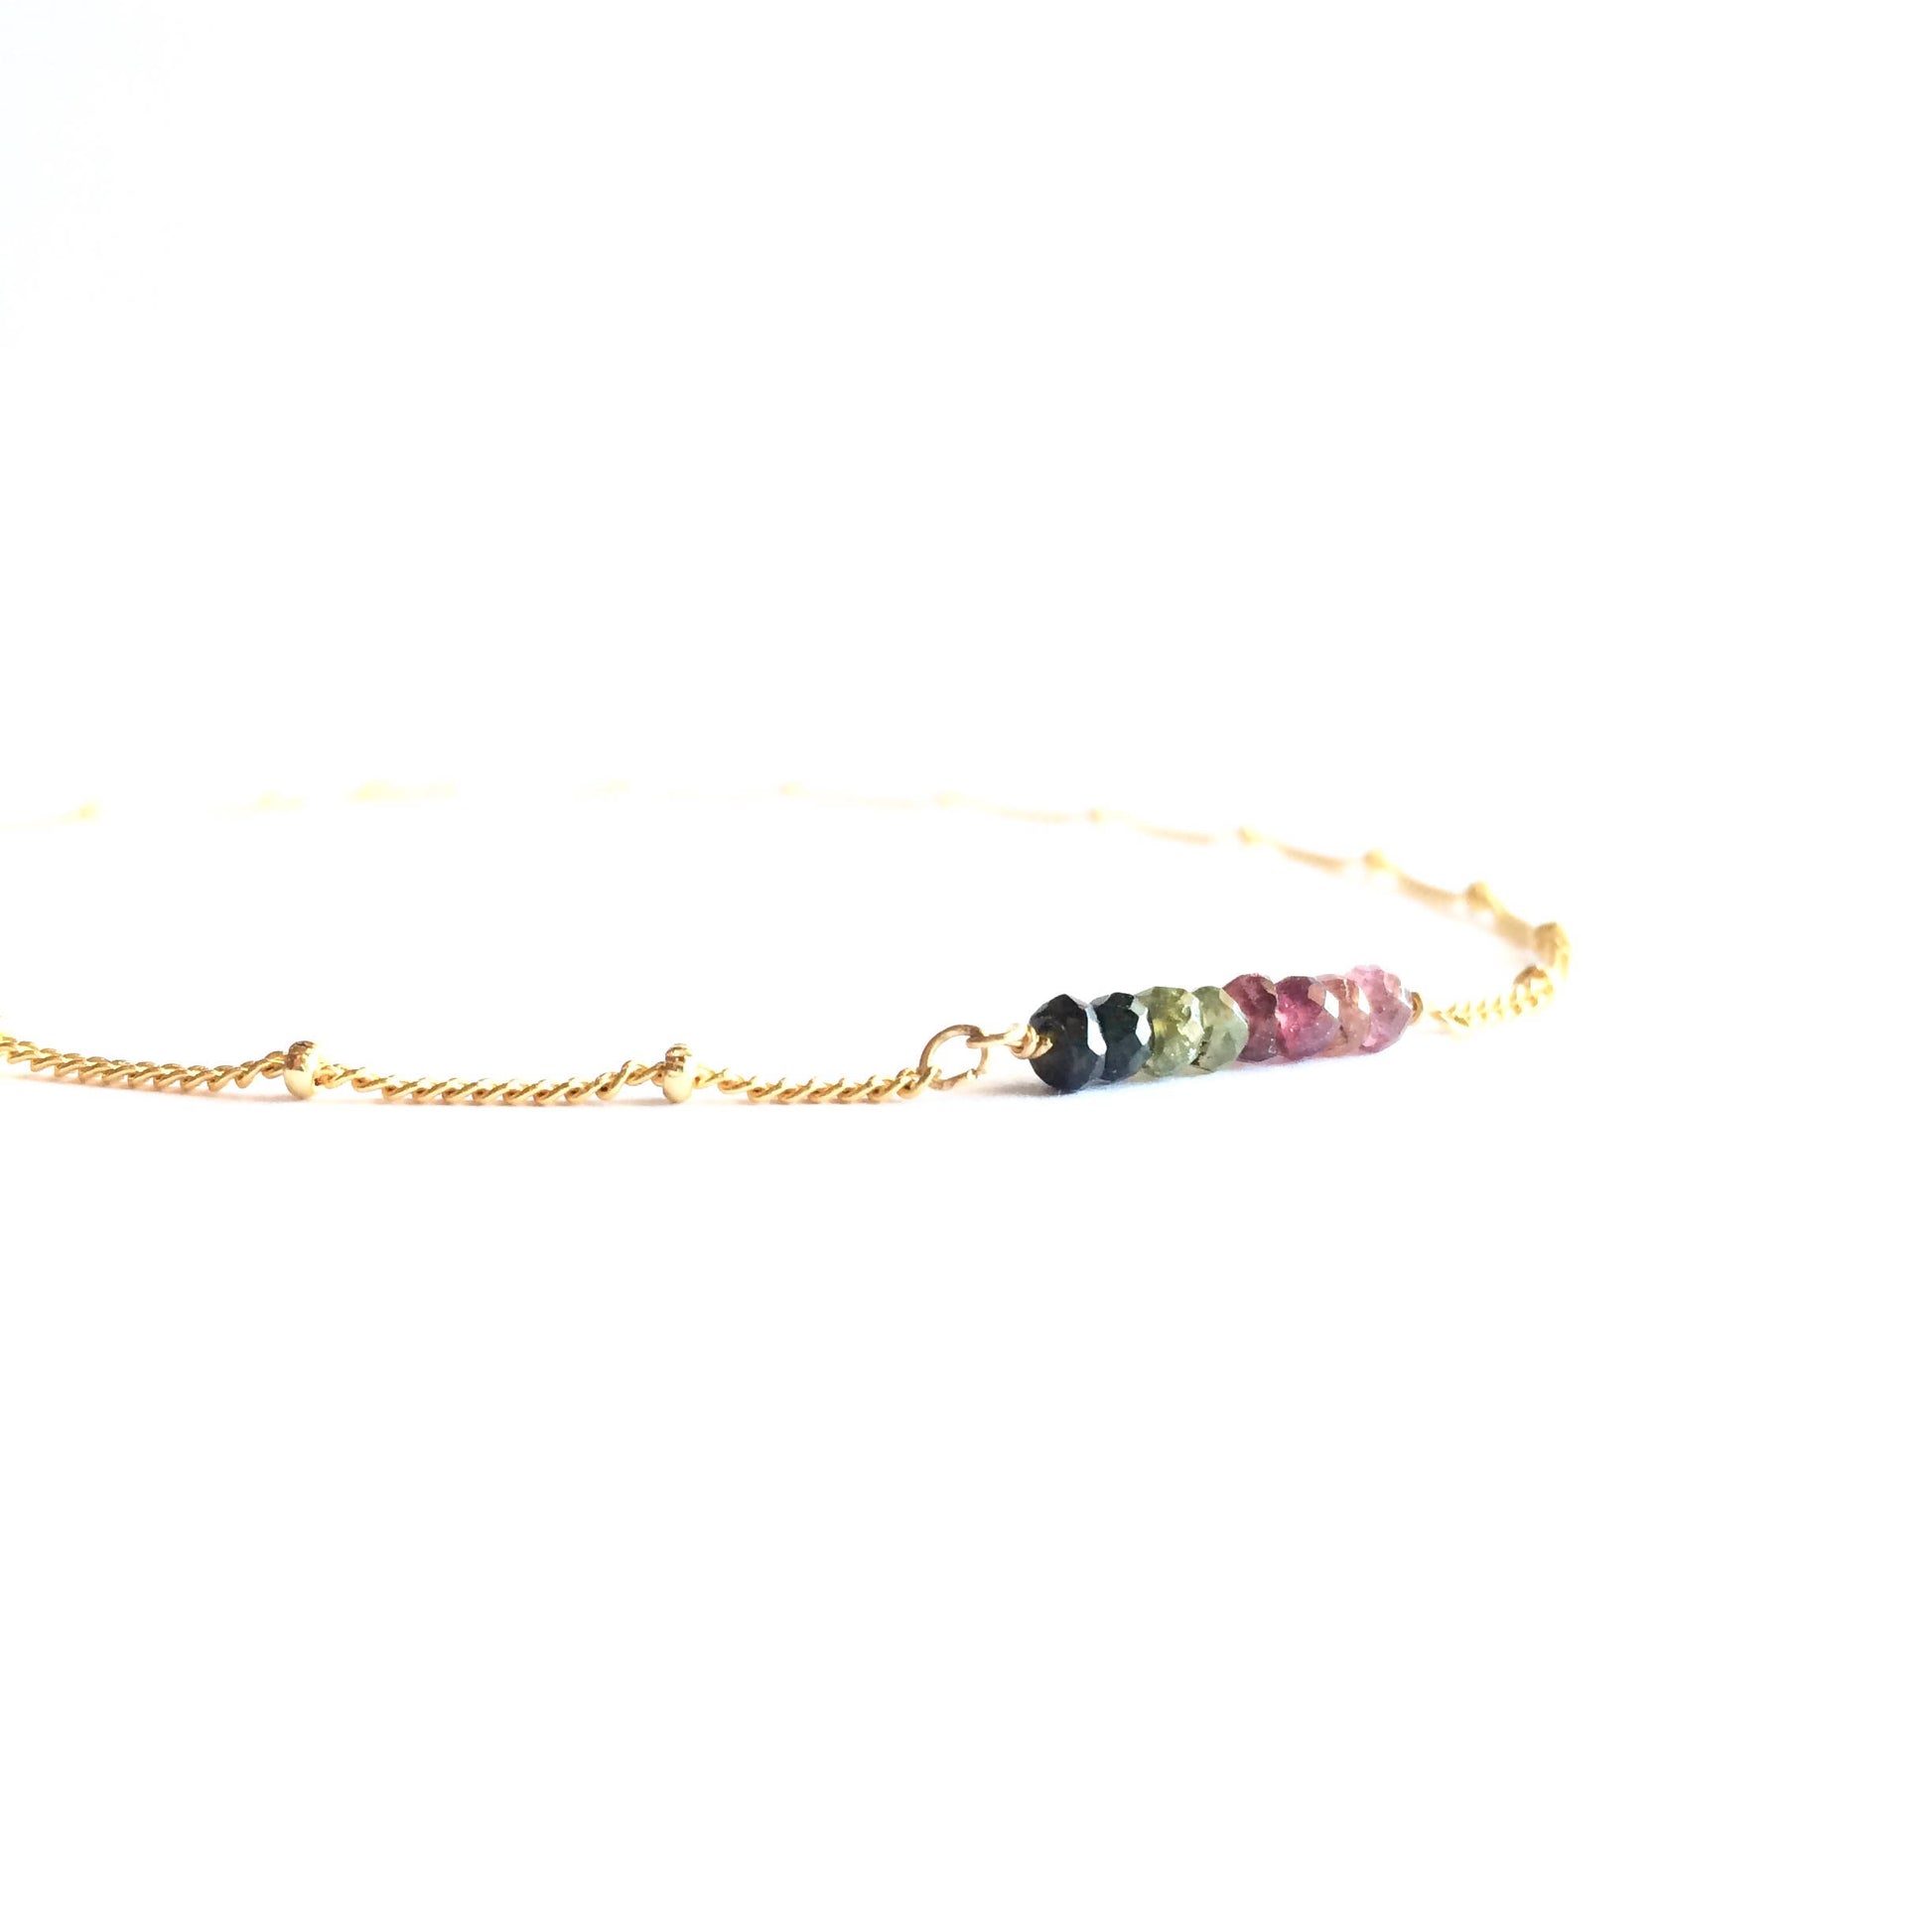 Tiny Watermelon Tourmaline Satellite Chain Bar Necklace | IB Jewelry